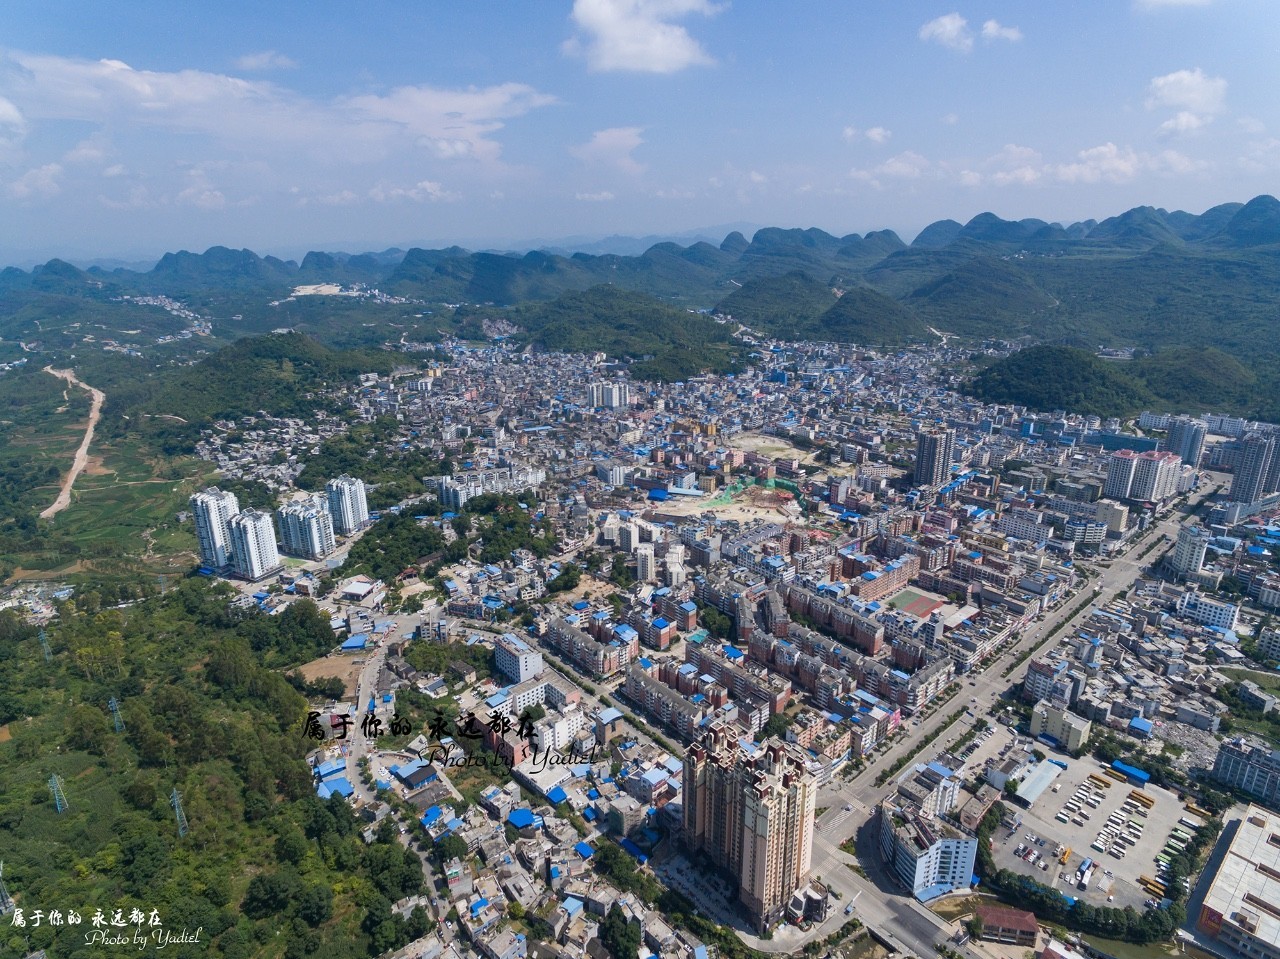 贞丰县最大的镇图片